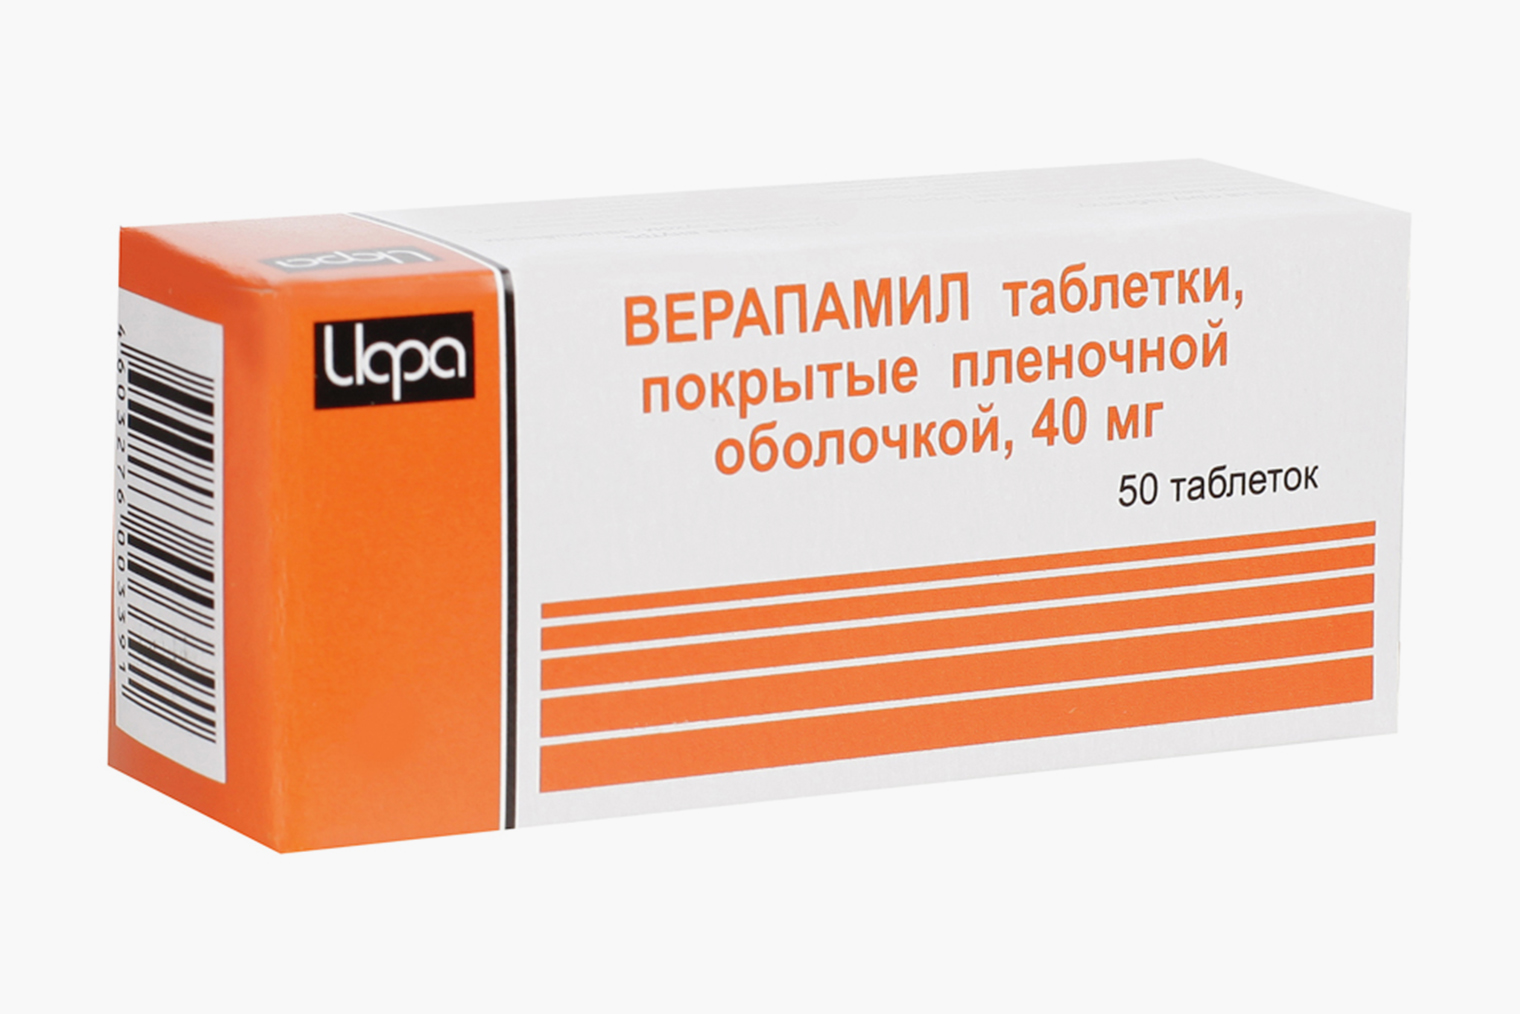 Стоимость 50 таблеток верапамила в дозировке 40 мг начинается от 13 ₽